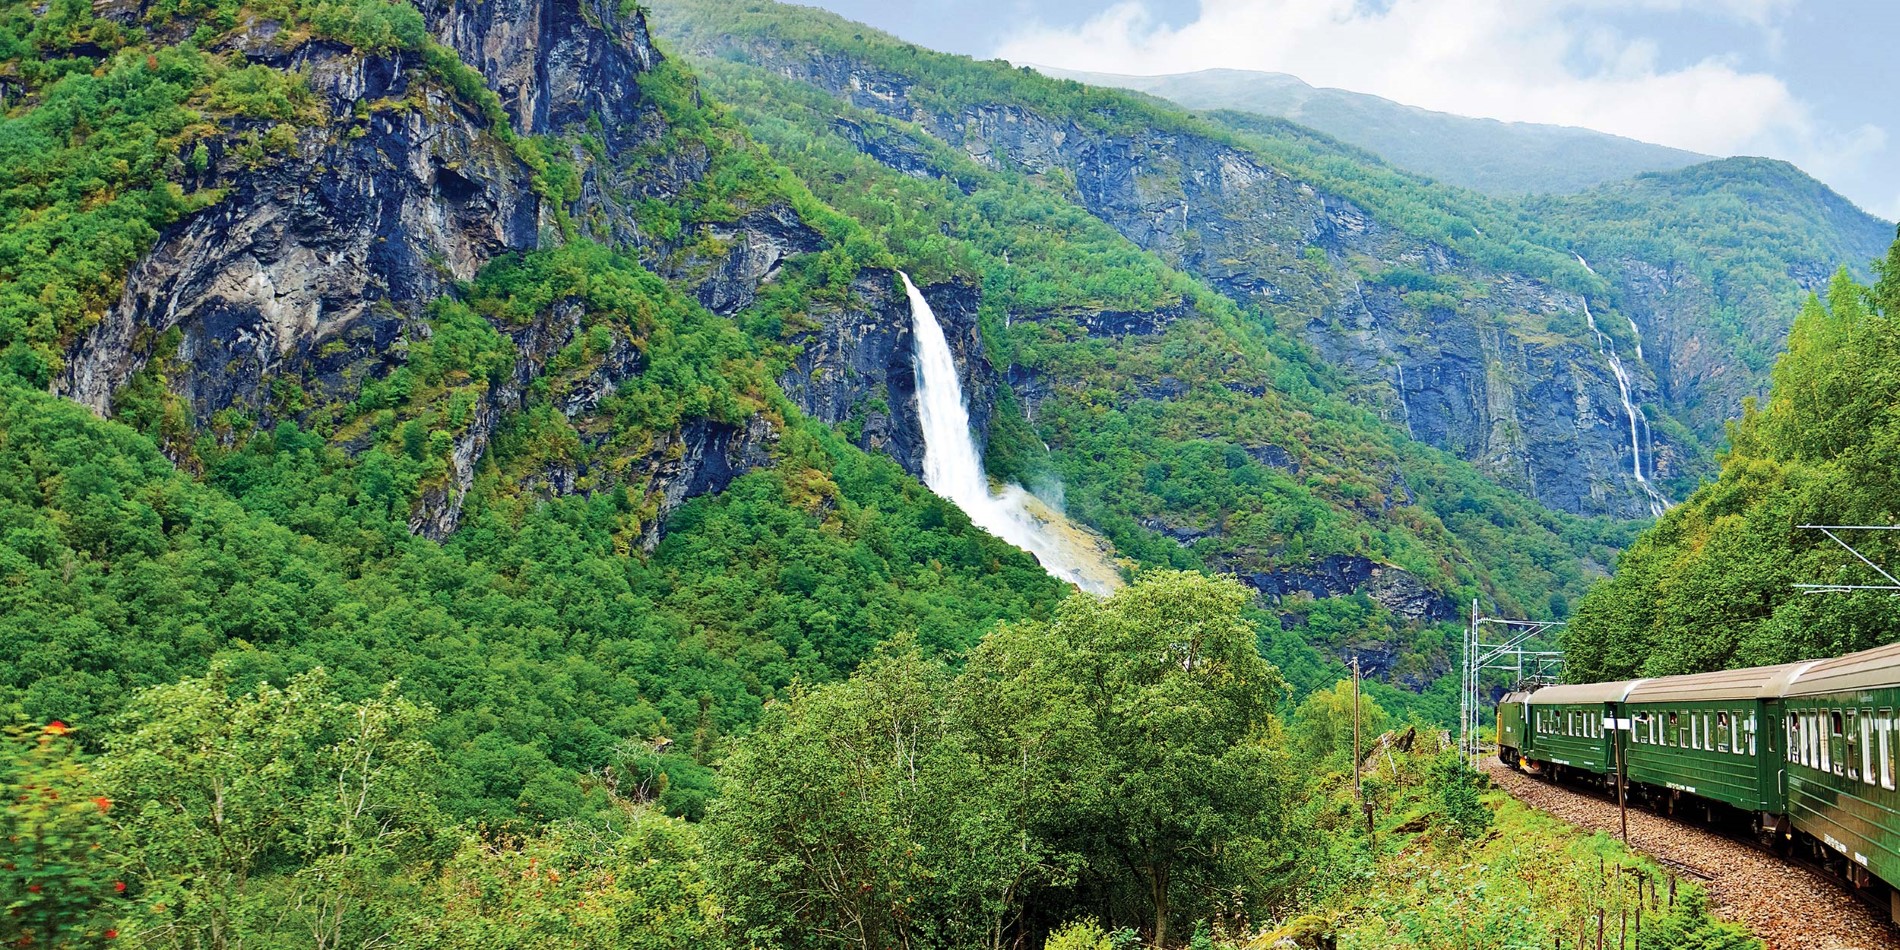 Oplev en af Norges mest populære ture – Flåmsbanen